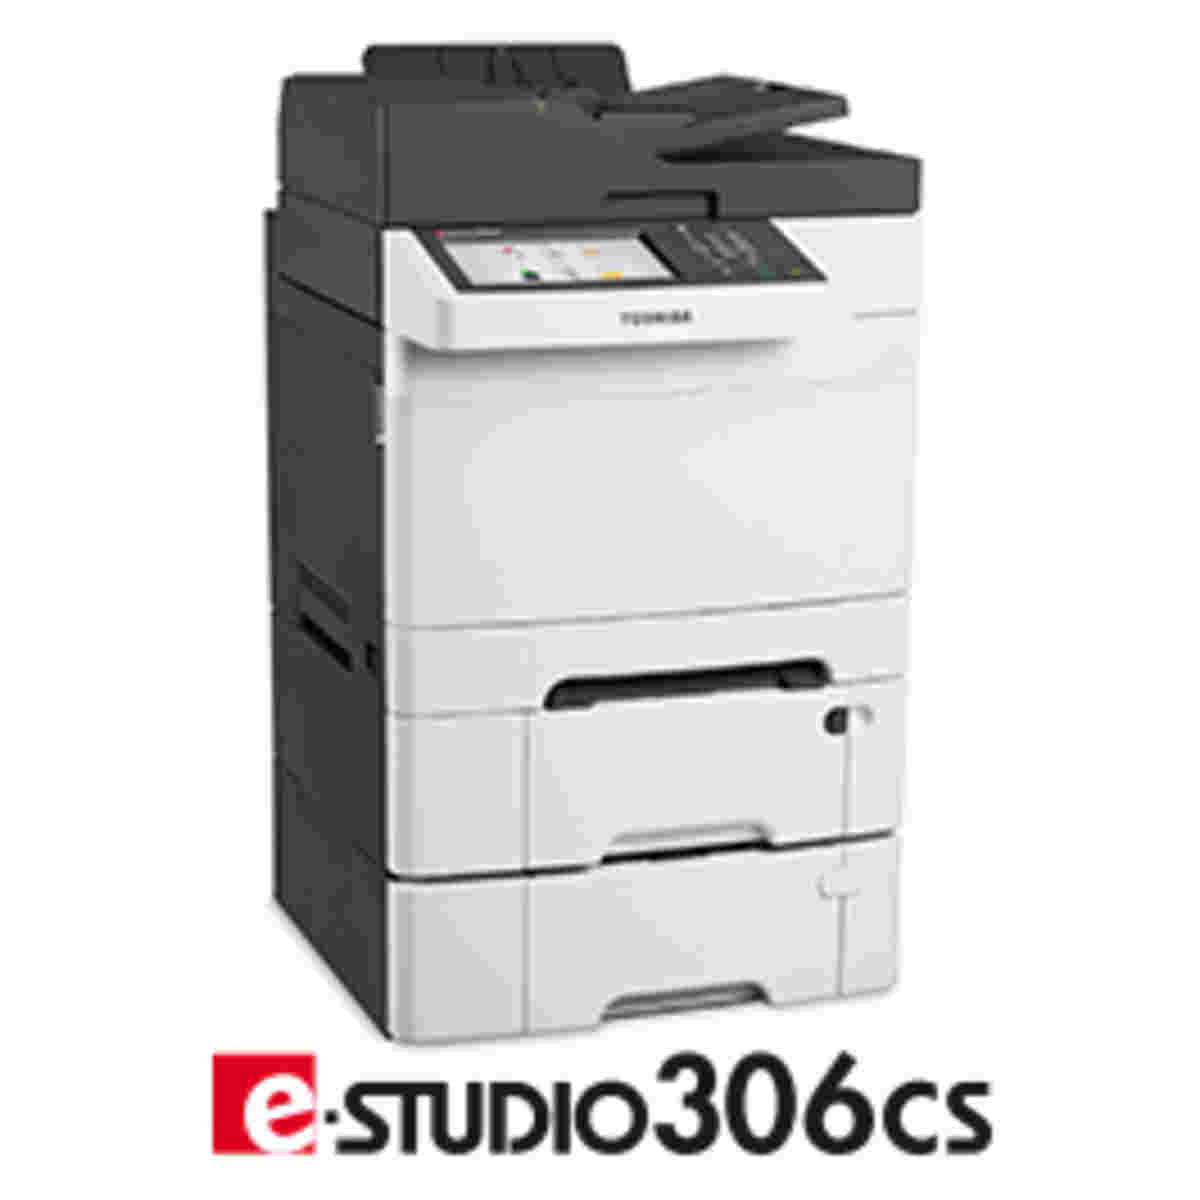 e-STUDIO306CS für Druck, Scan, Kopie und Fax